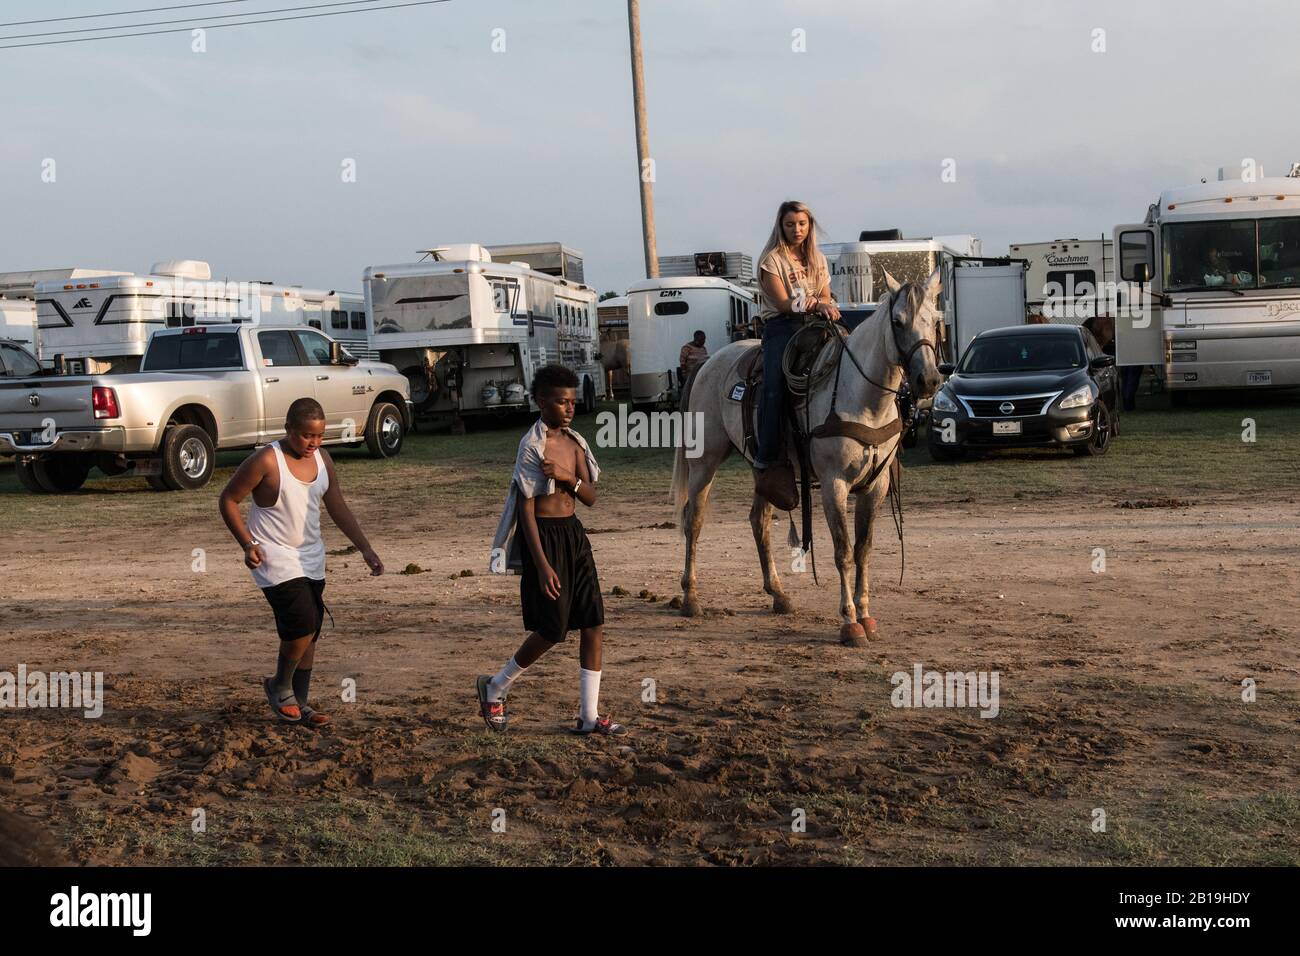 Junge Cowboys beim Okmulgee Invitational, dem ältesten afroamerikanischen Rodeo der Vereinigten Staaten. Okmulgee, Oklahoma. Stockfoto